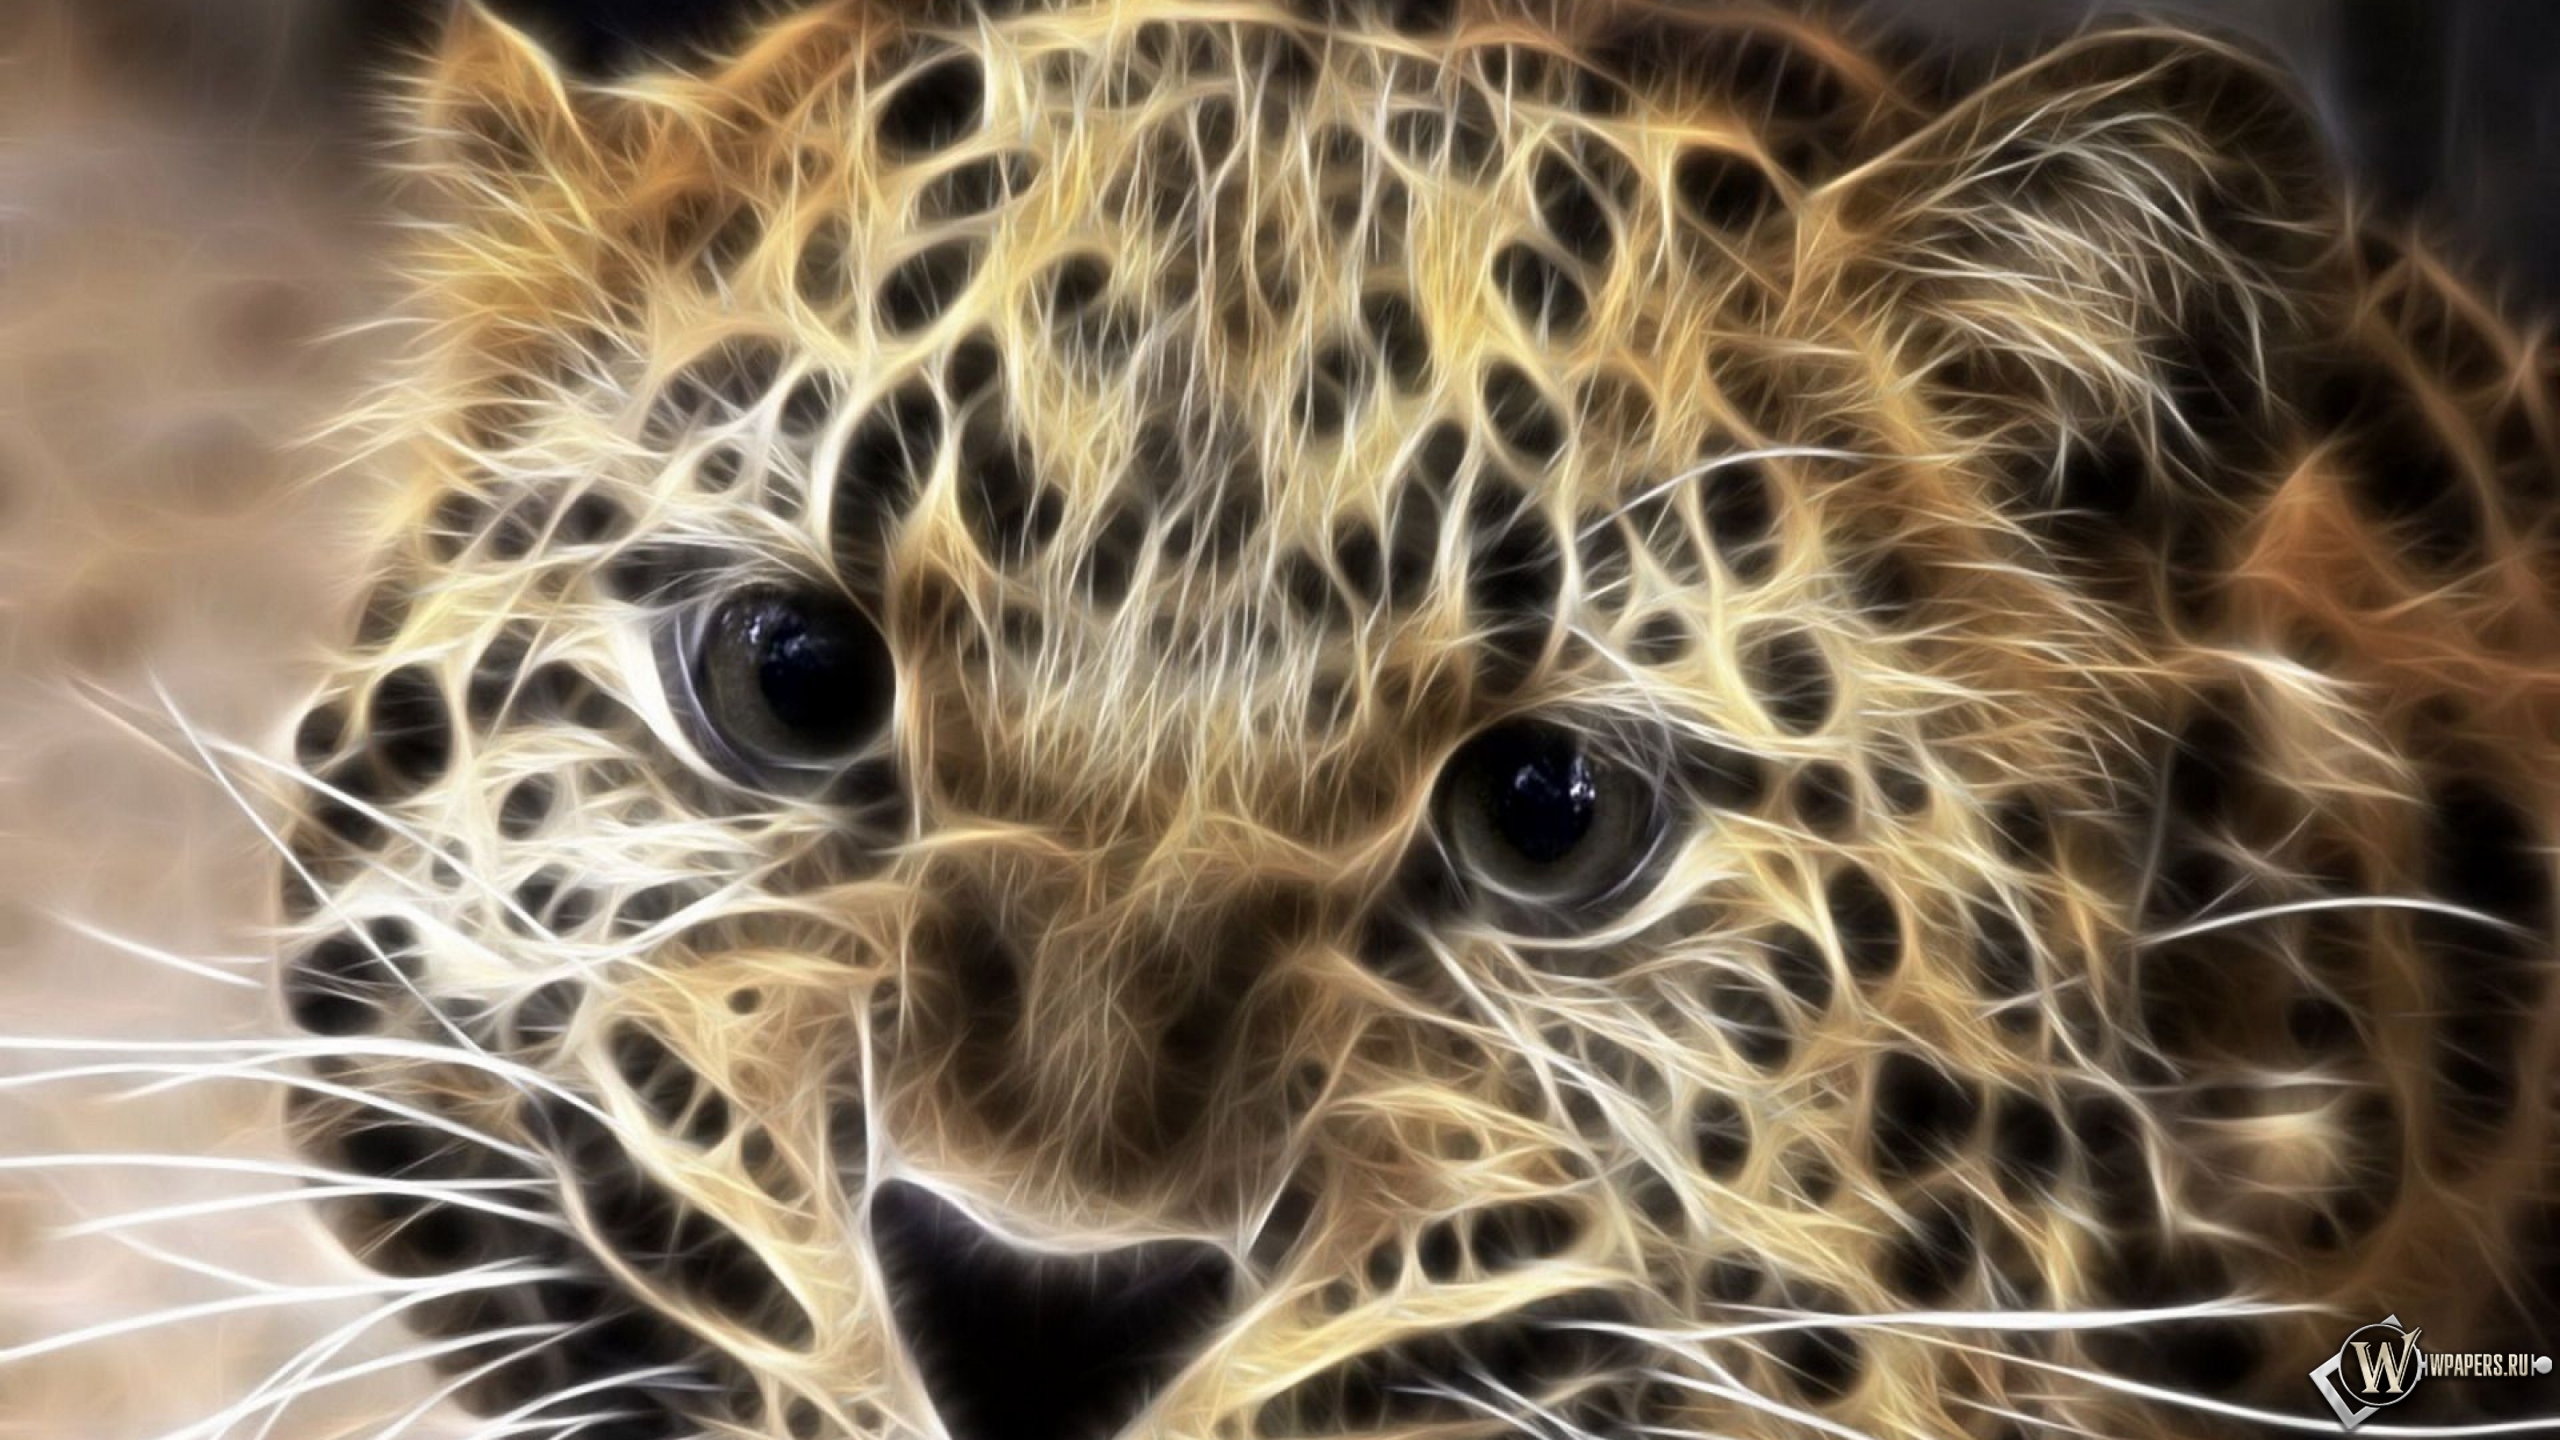 Леопард в обработке 2560x1440